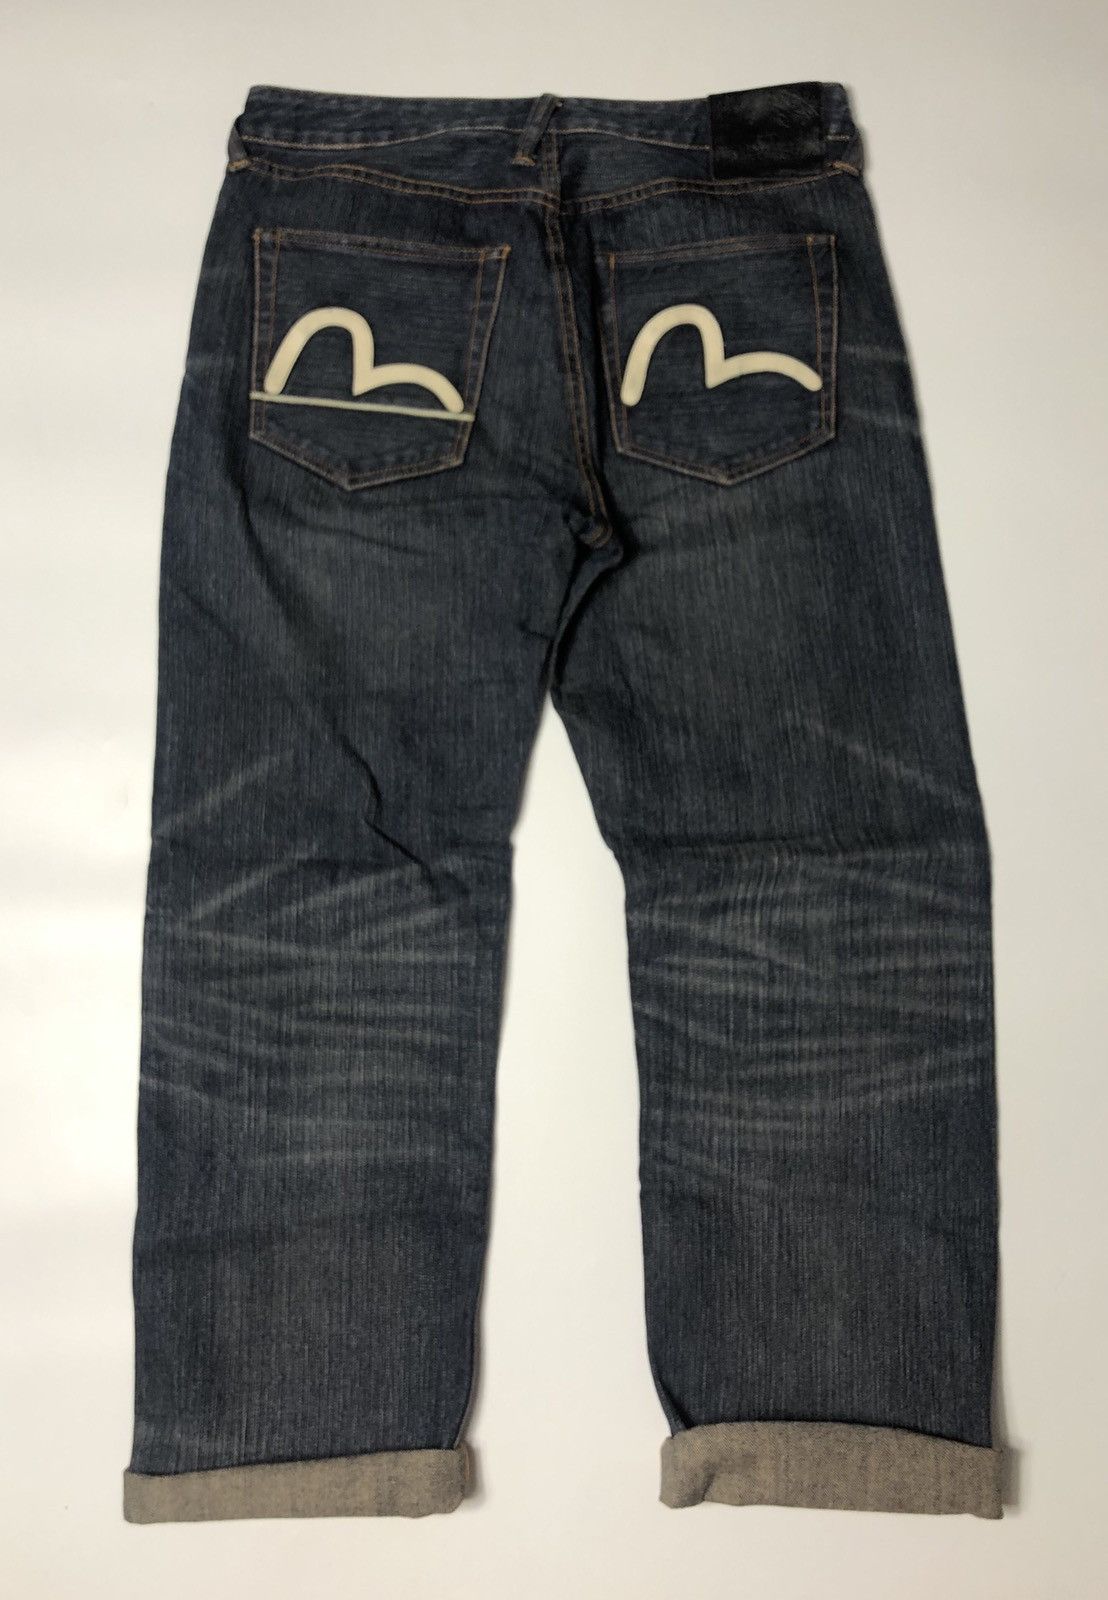 Evisu evisu selvedge jeans Size US 34 / EU 50 - 2 Preview